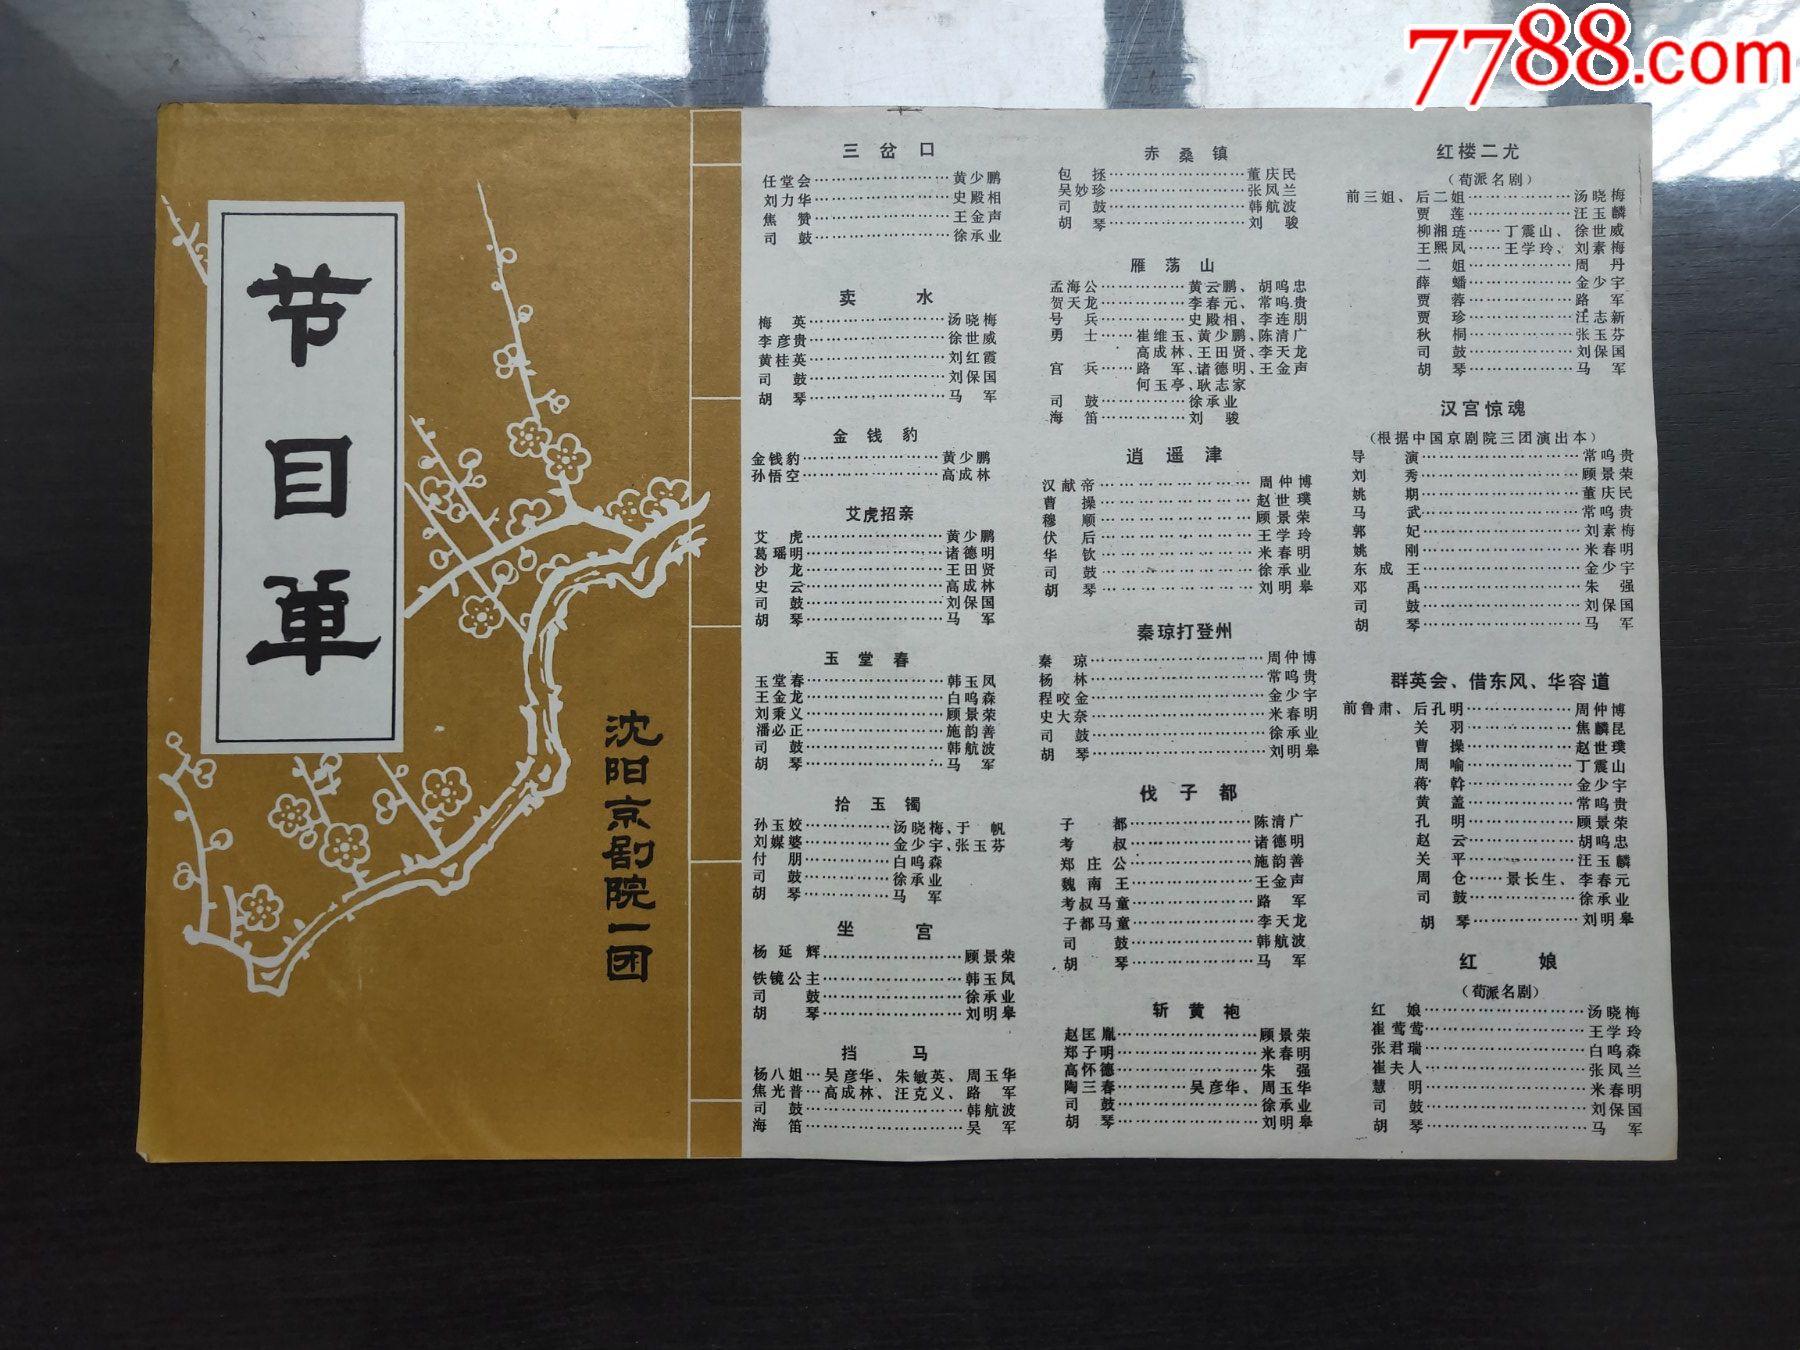 京城梨园大戏楼的菜单图片